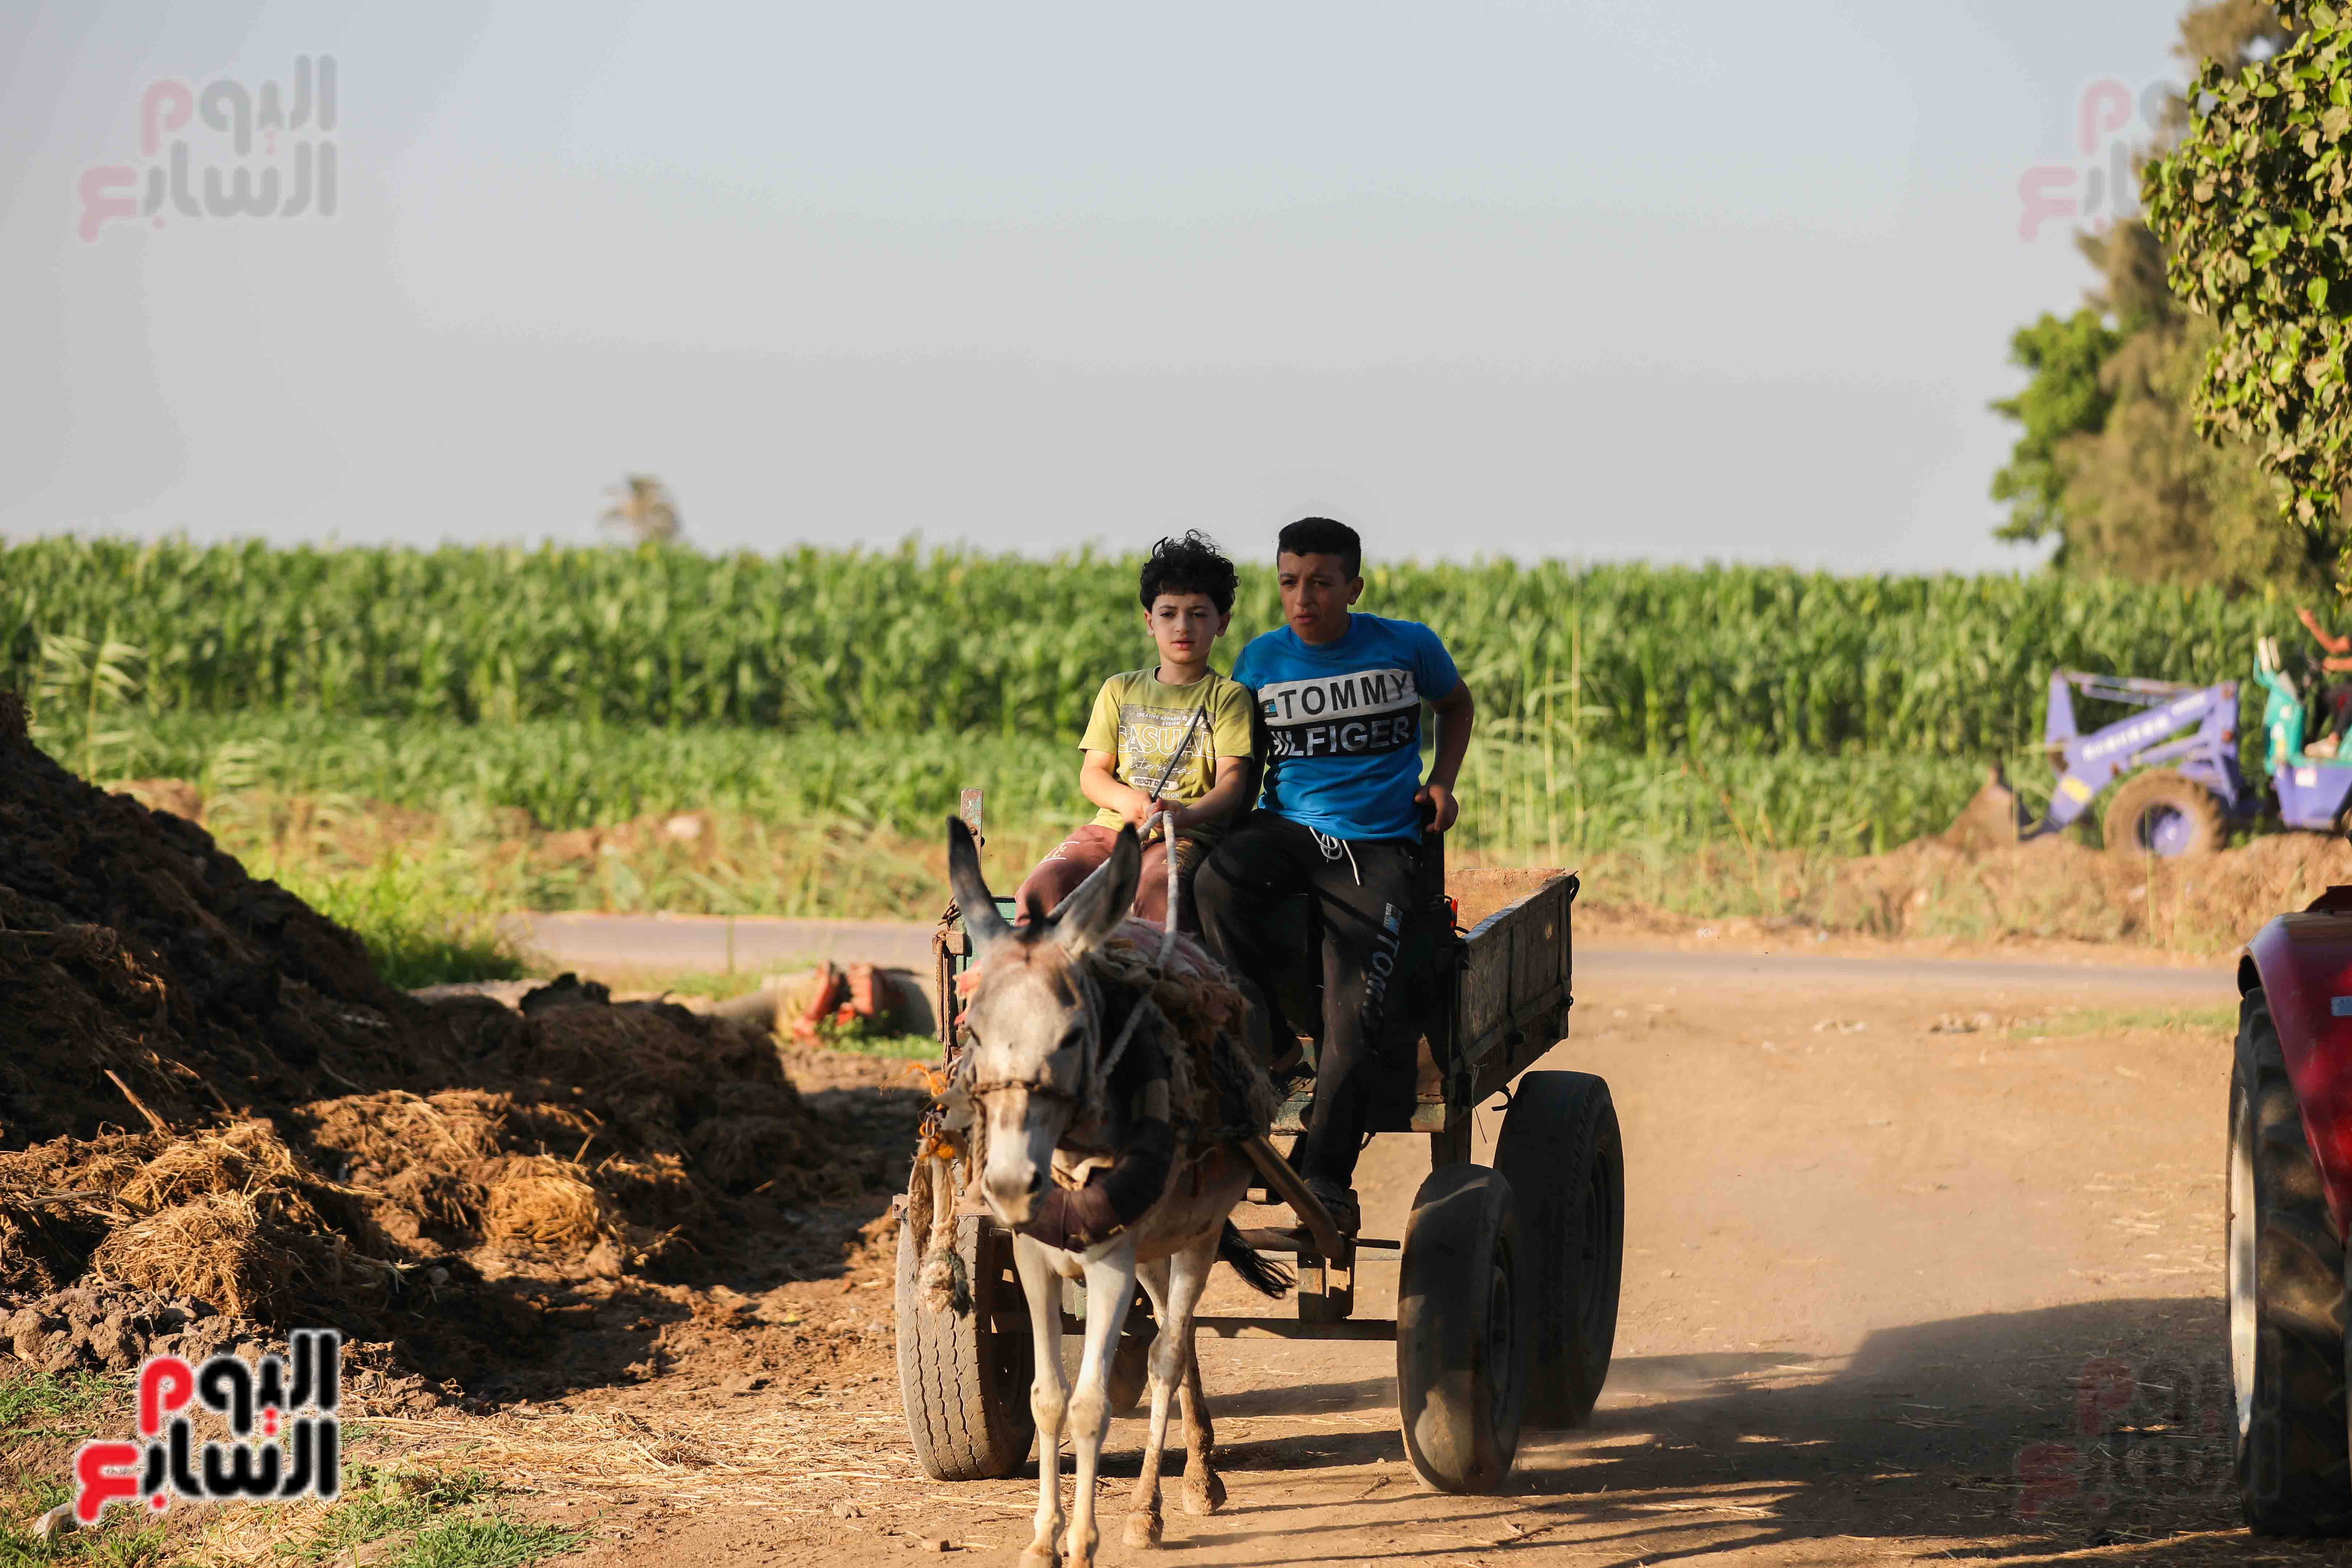 مشاهد مبهجة من العمل في الريف المصري وسط الأجواء الحارة (14)